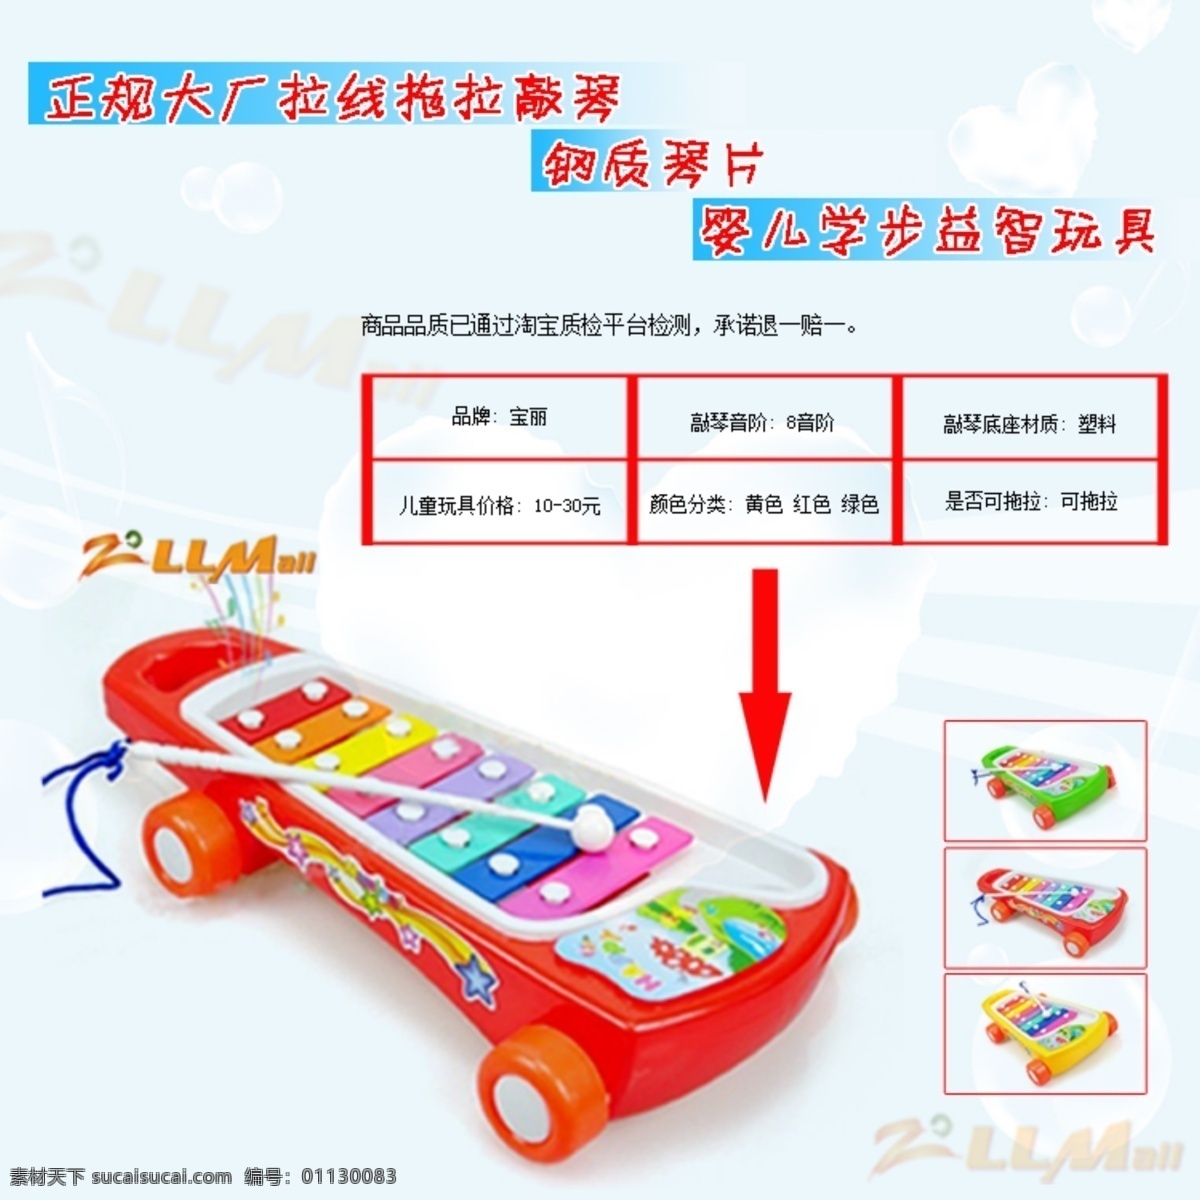 产品 说明 模板下载 产品说明 敲琴 玩具 其他模板 网页模板 源文件 白色